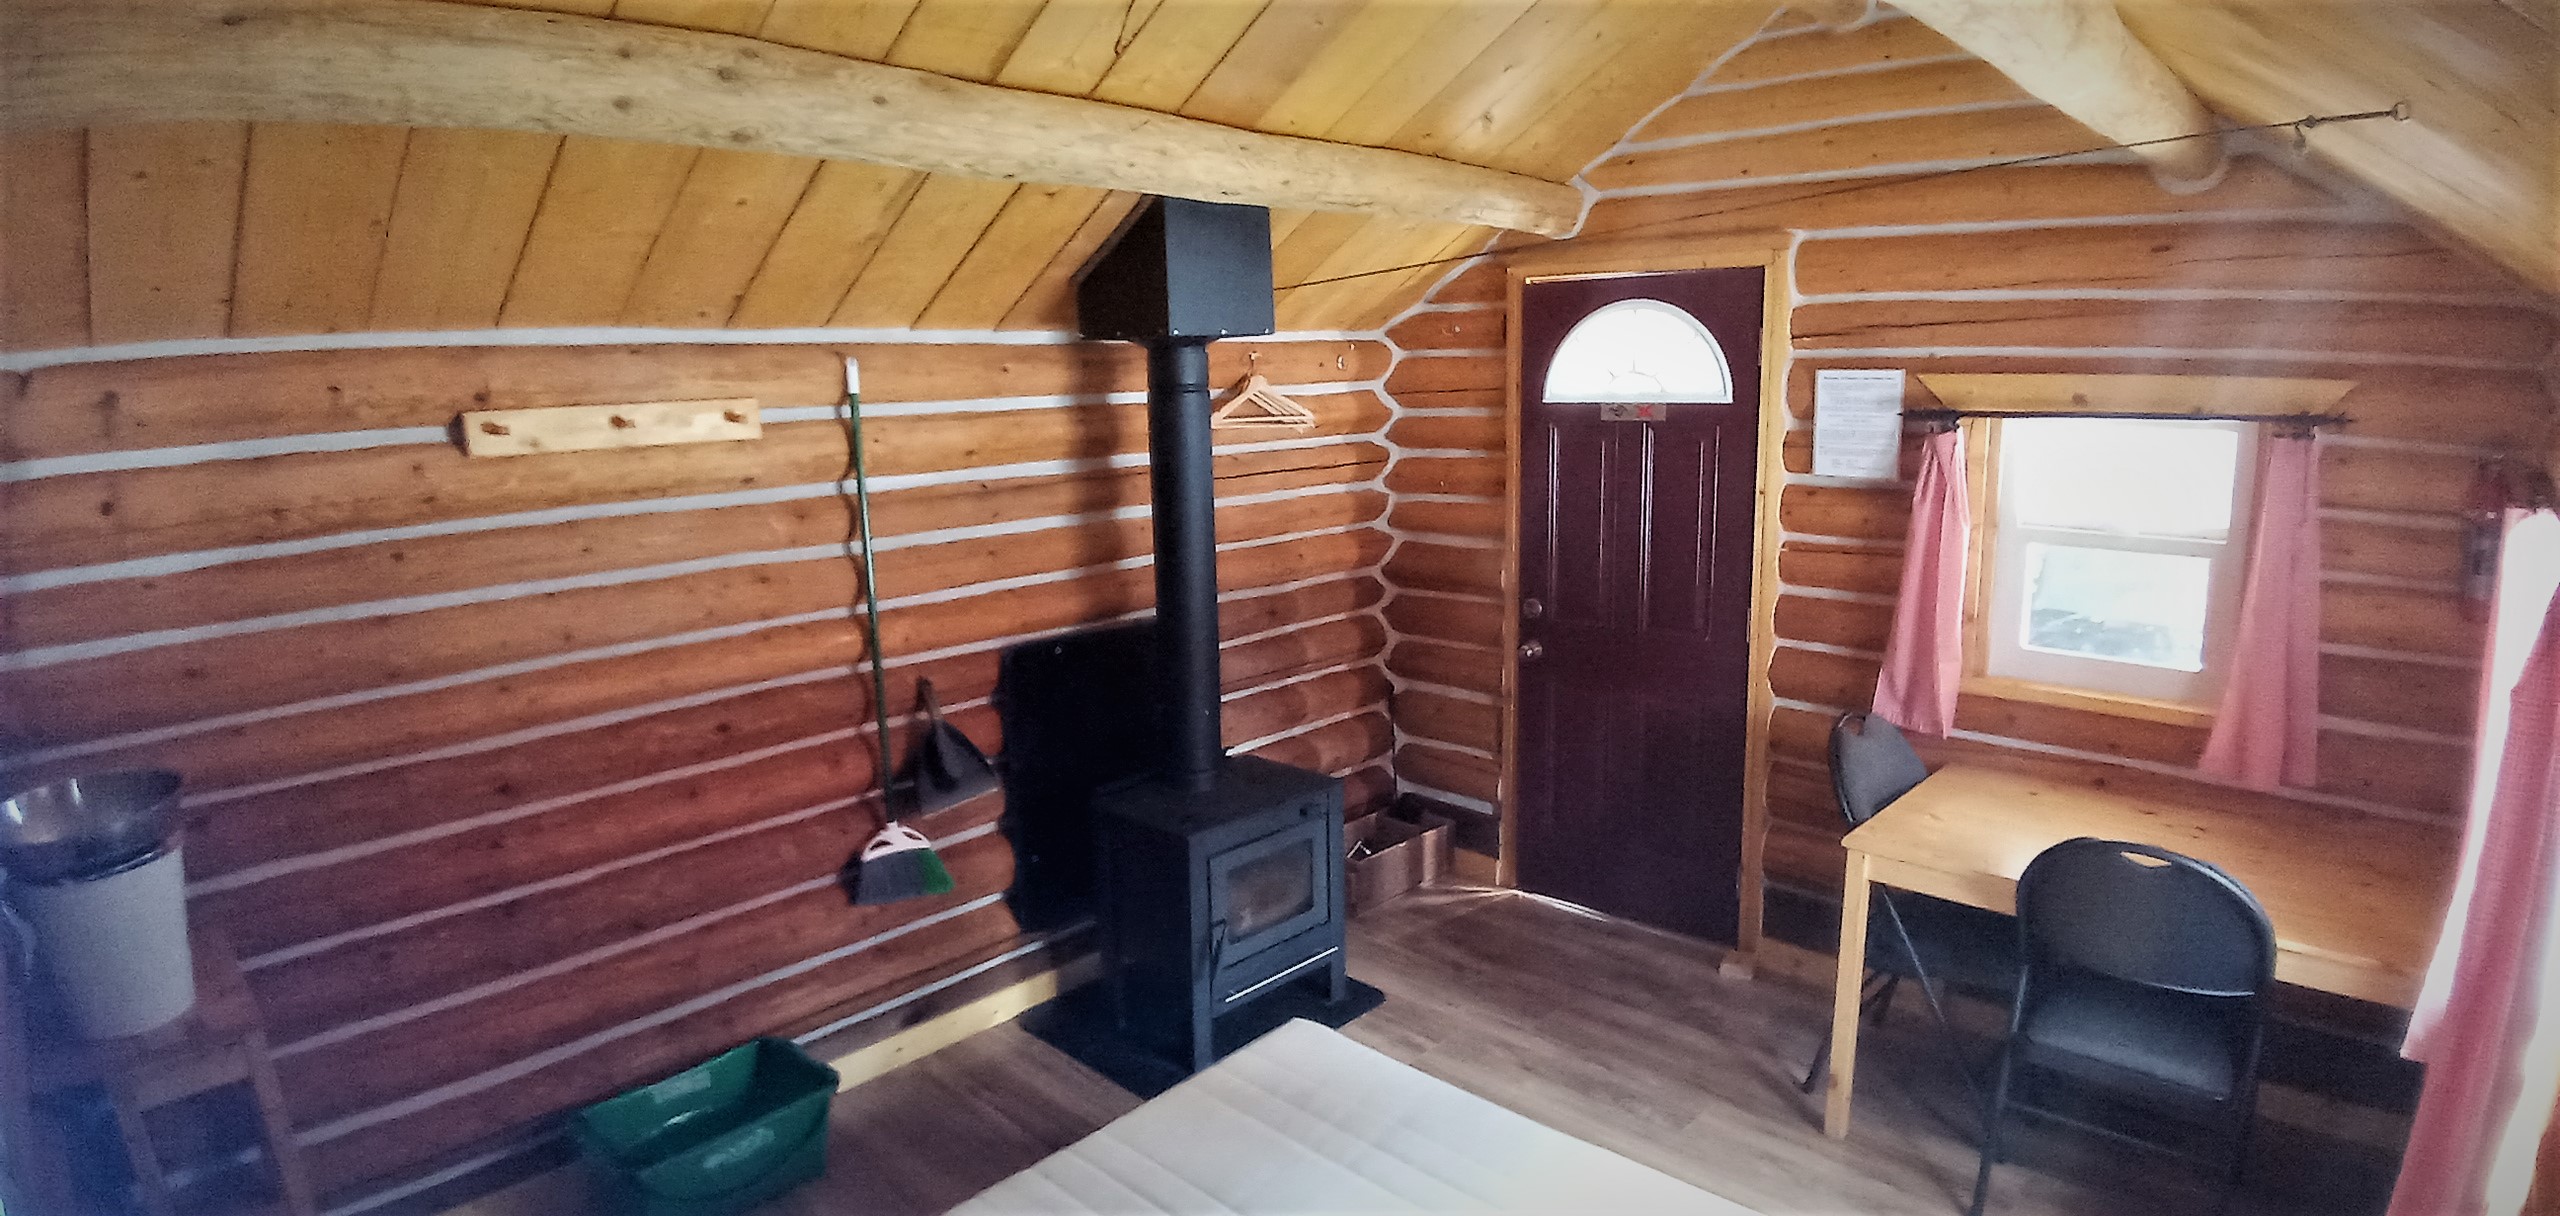 Inside Cabin 7